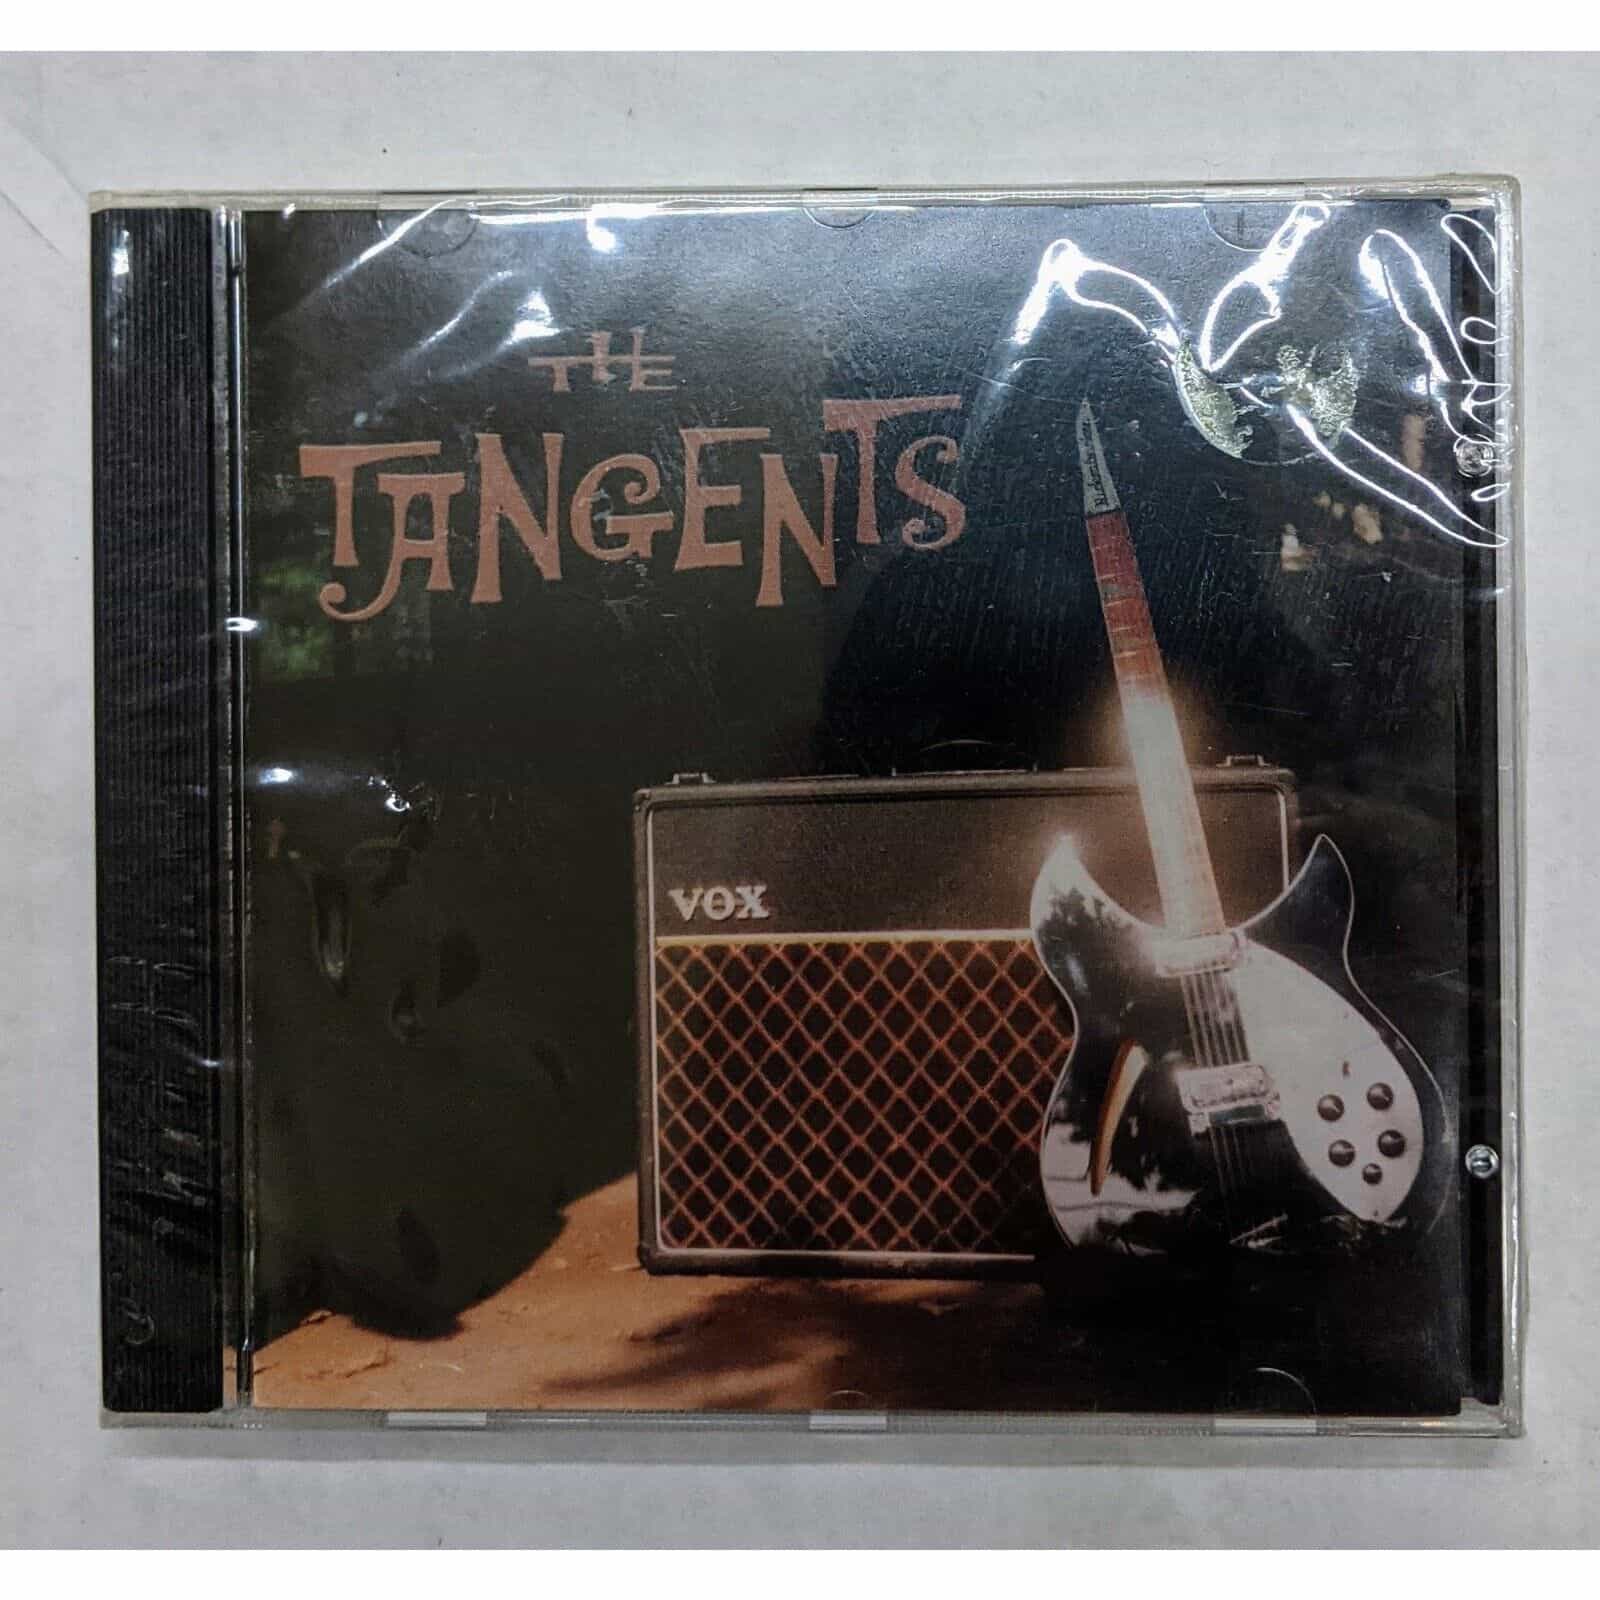 The Tangents Music Album